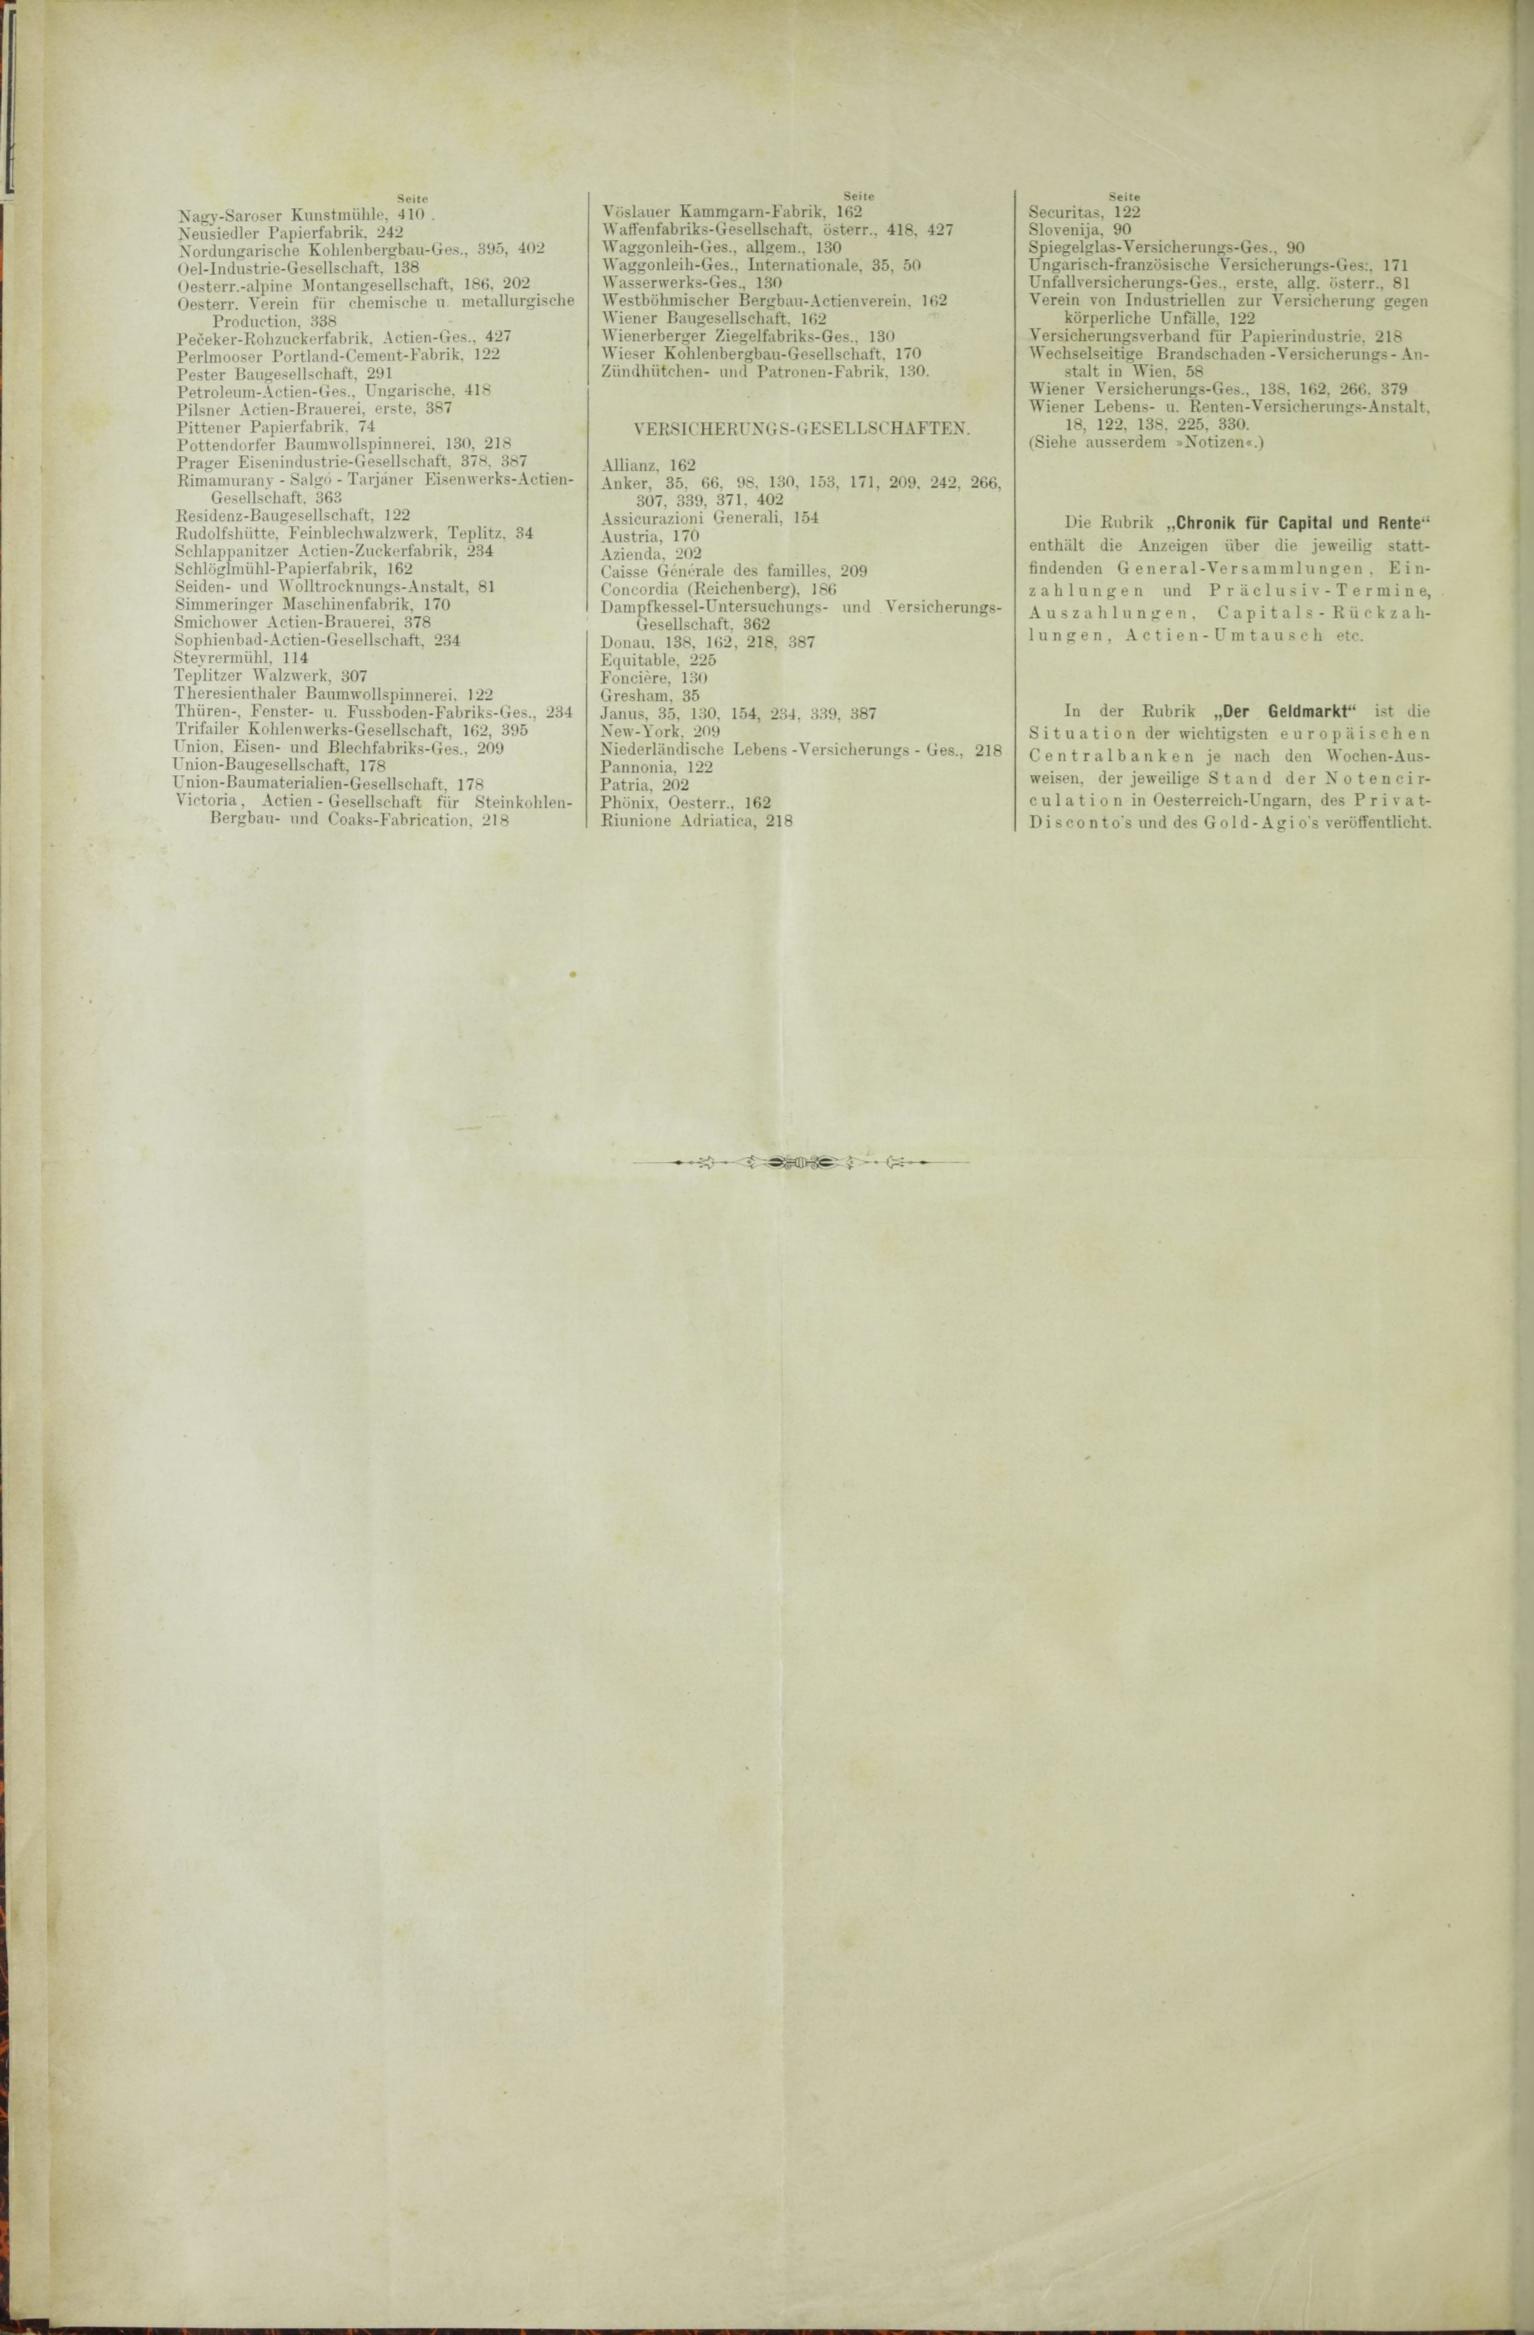 Der Tresor 09.04.1885 - Seite 12